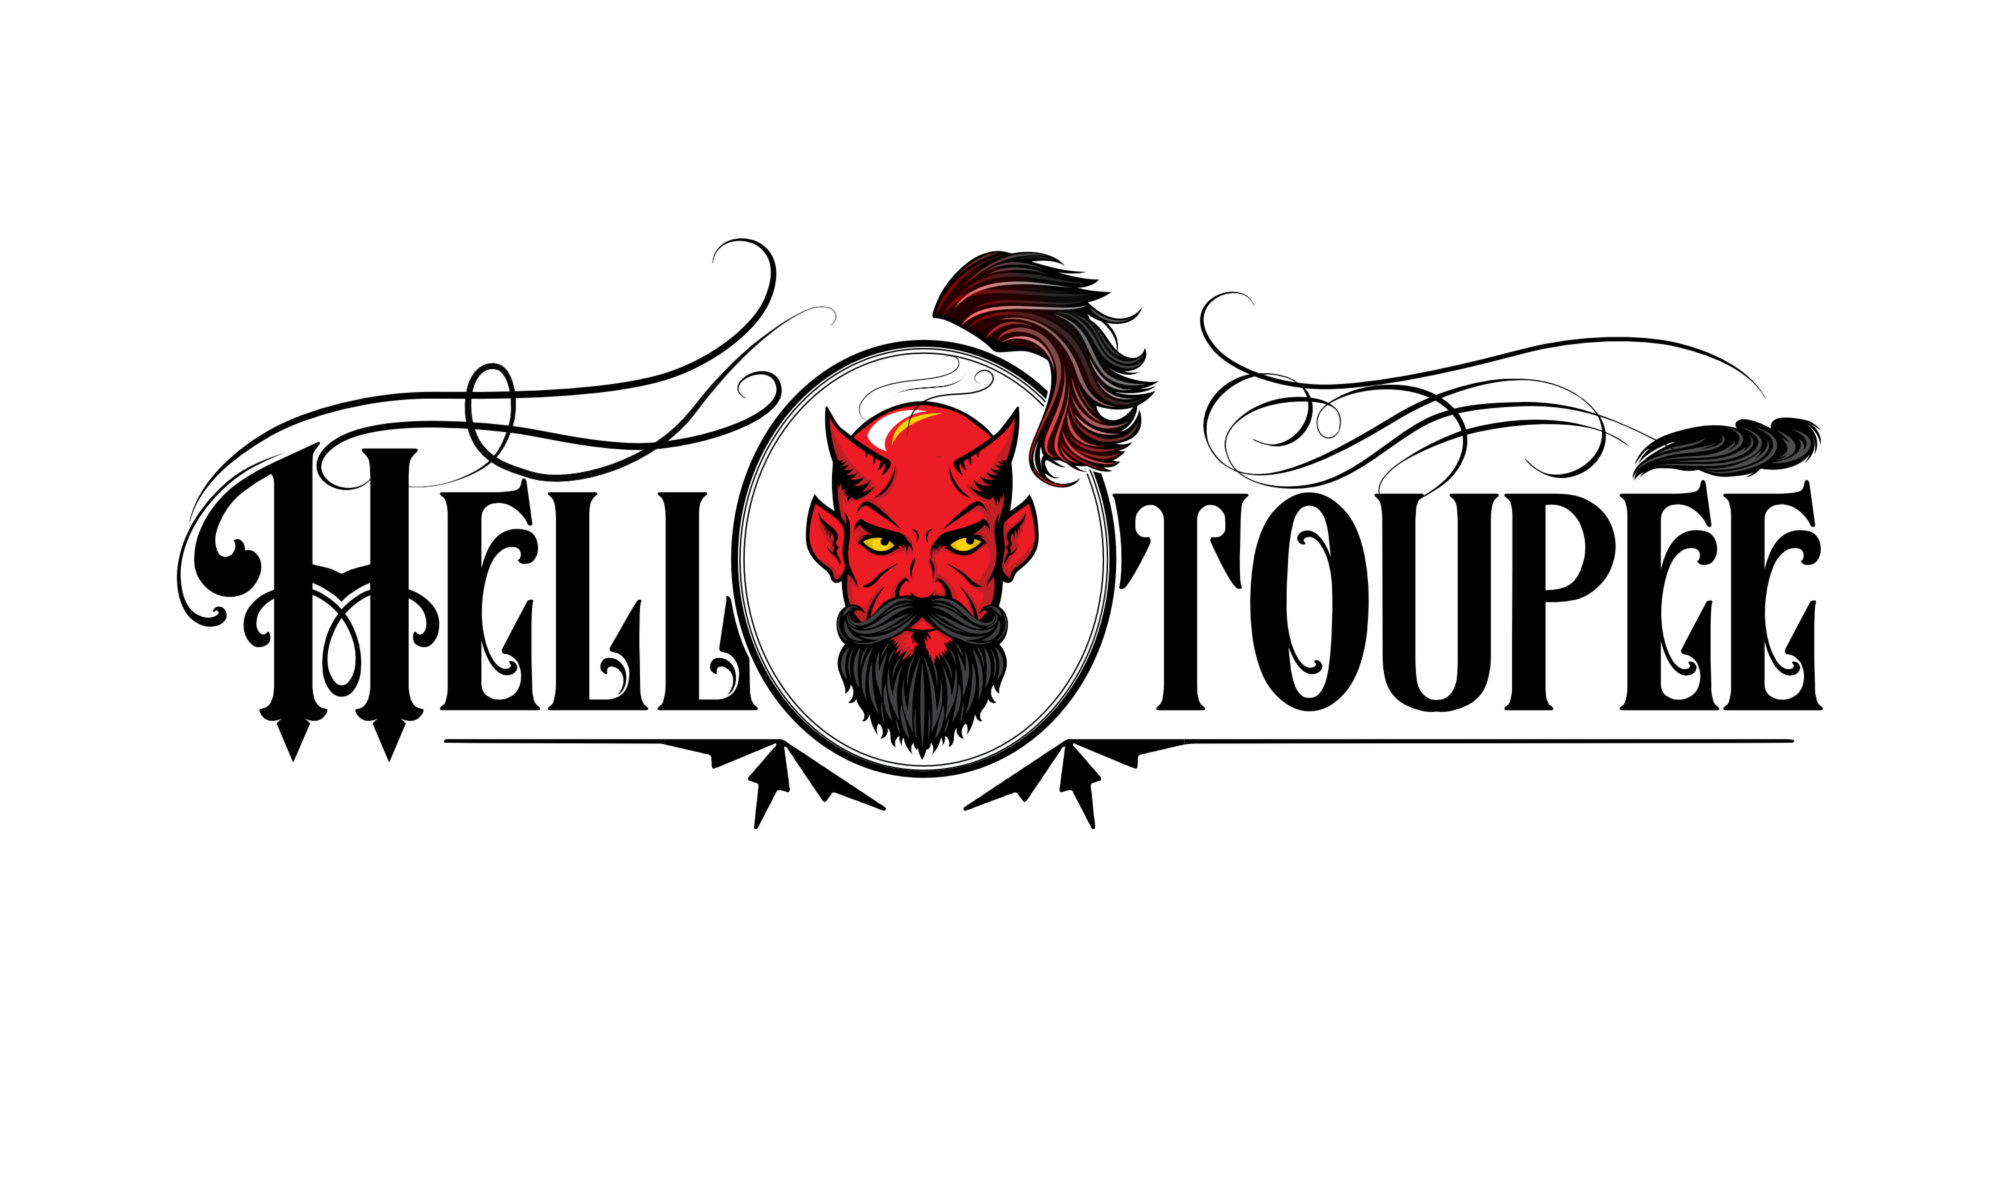 helltoupee.net